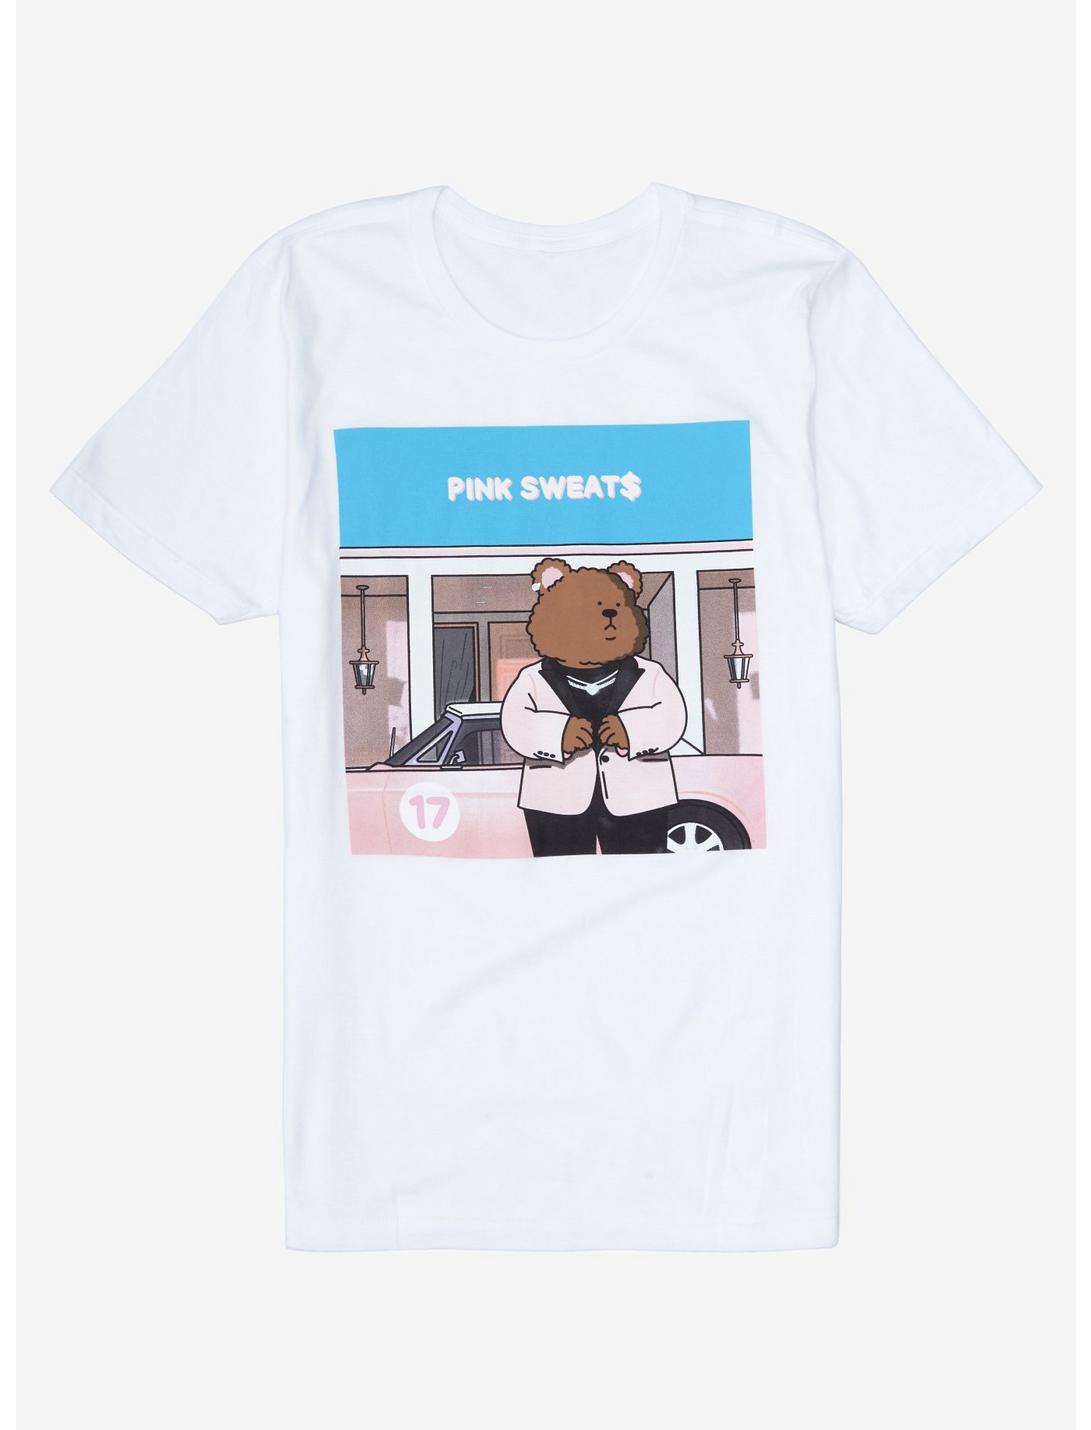 Pink Sweat$ 17 Bear T-Shirt, WHITE, hi-res